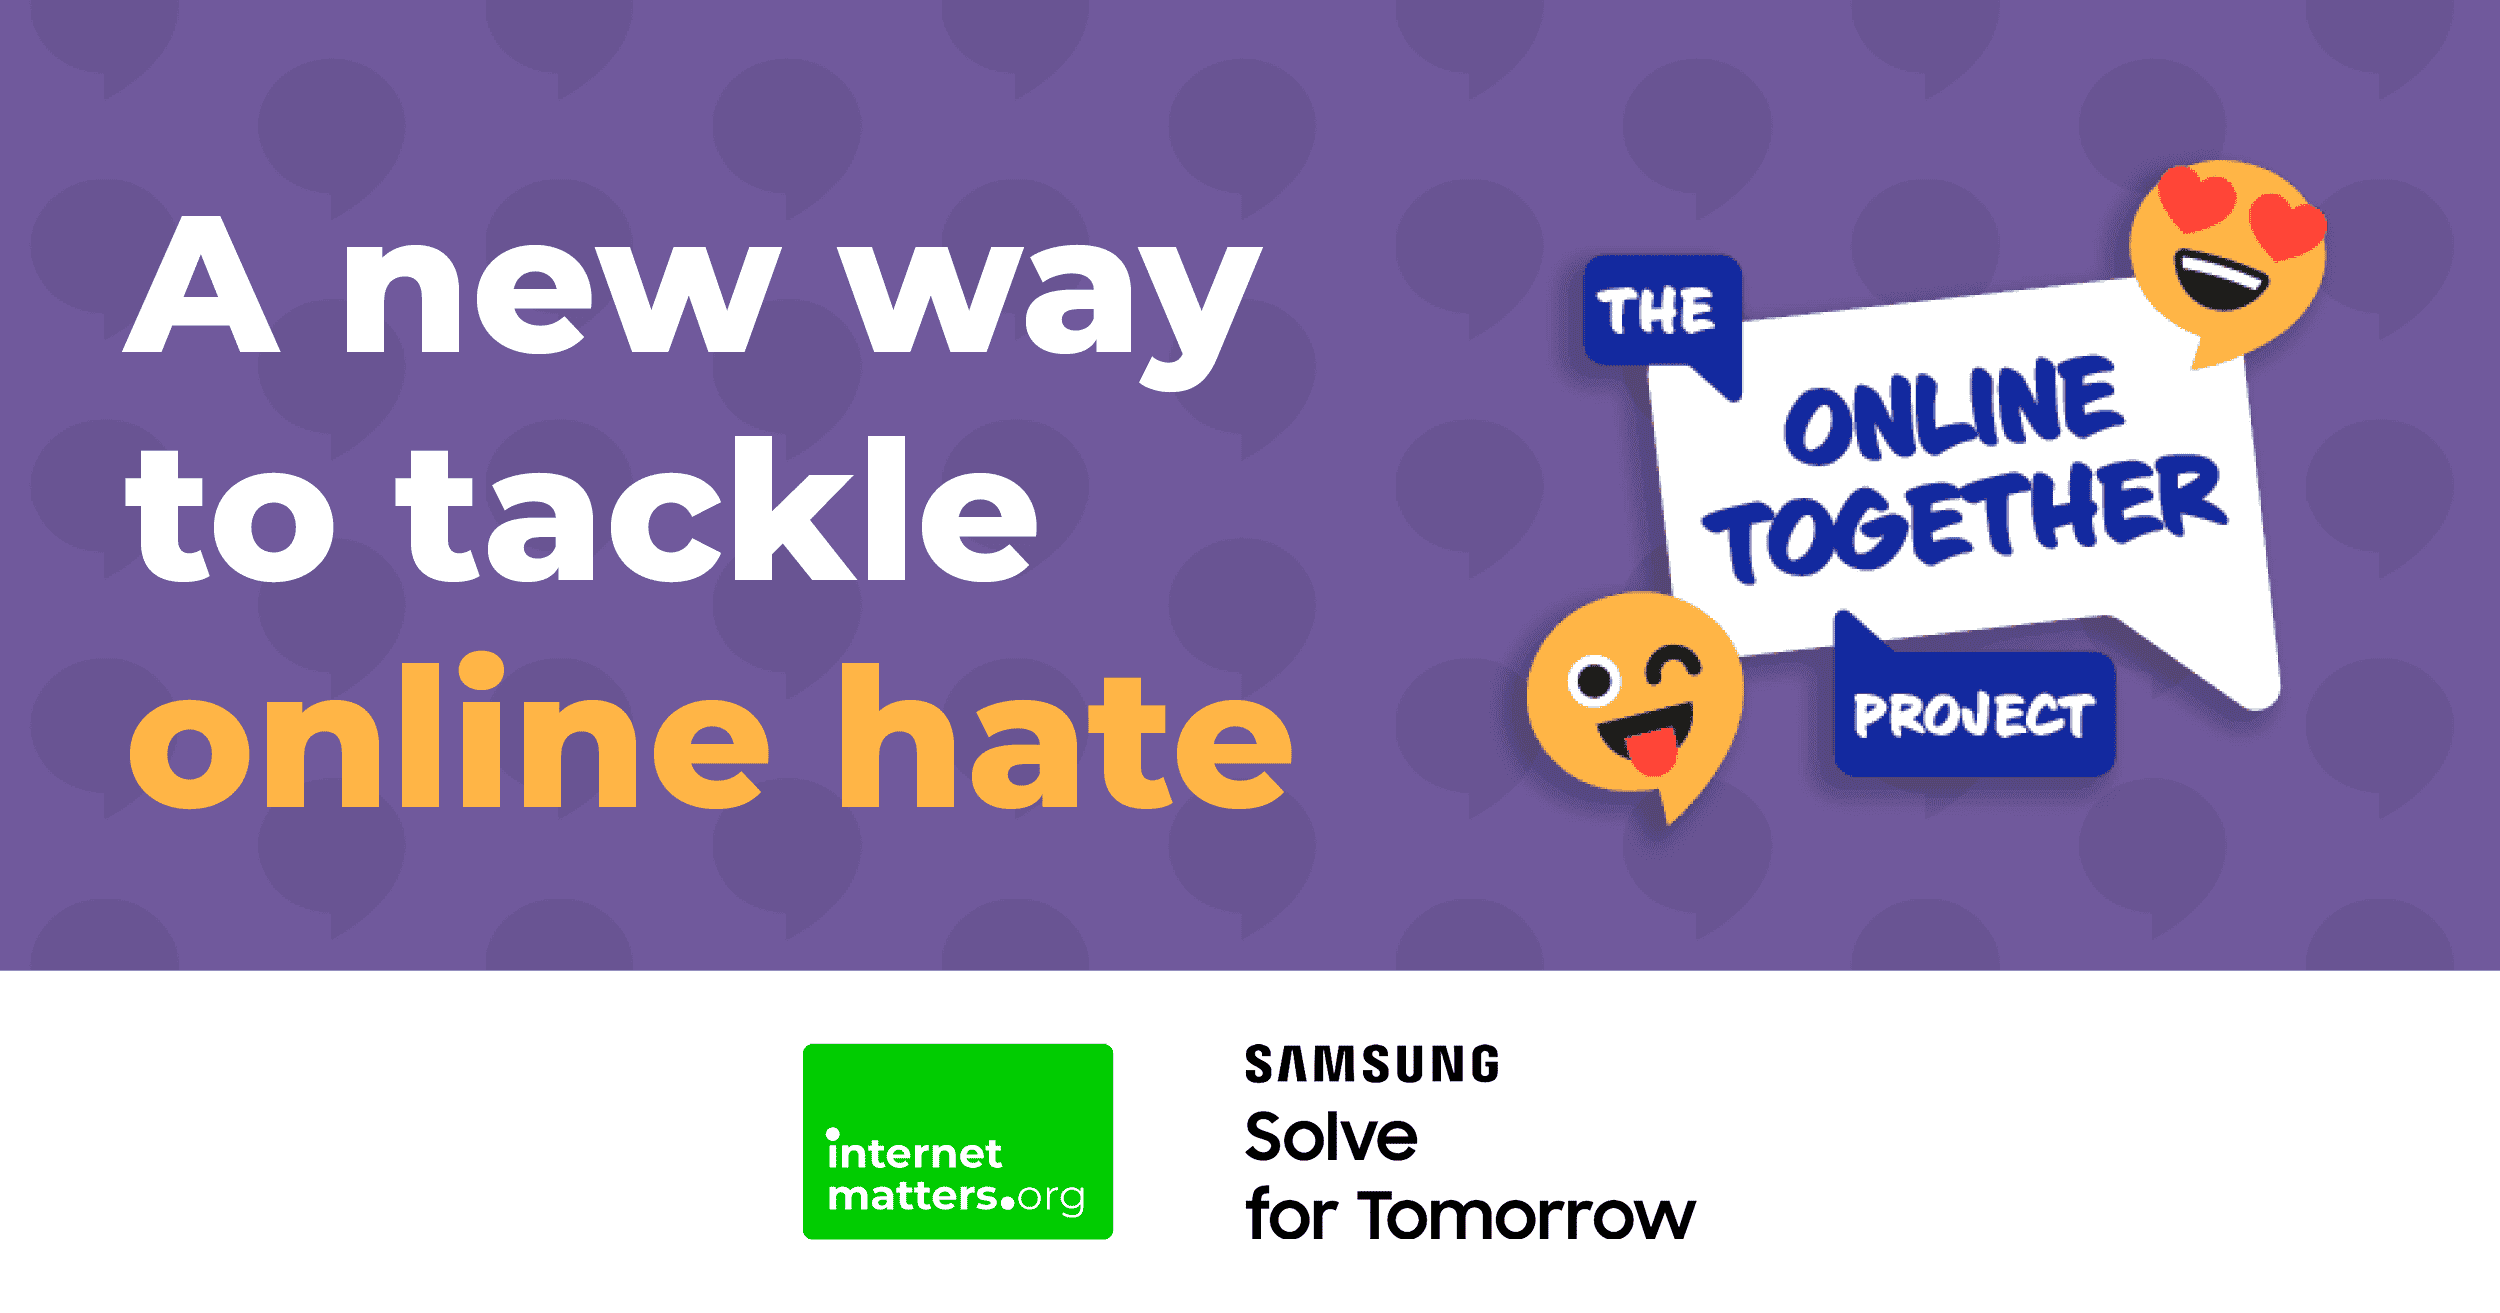 'Een nieuwe manier om online haat aan te pakken' met het logo van The Online Together Project.